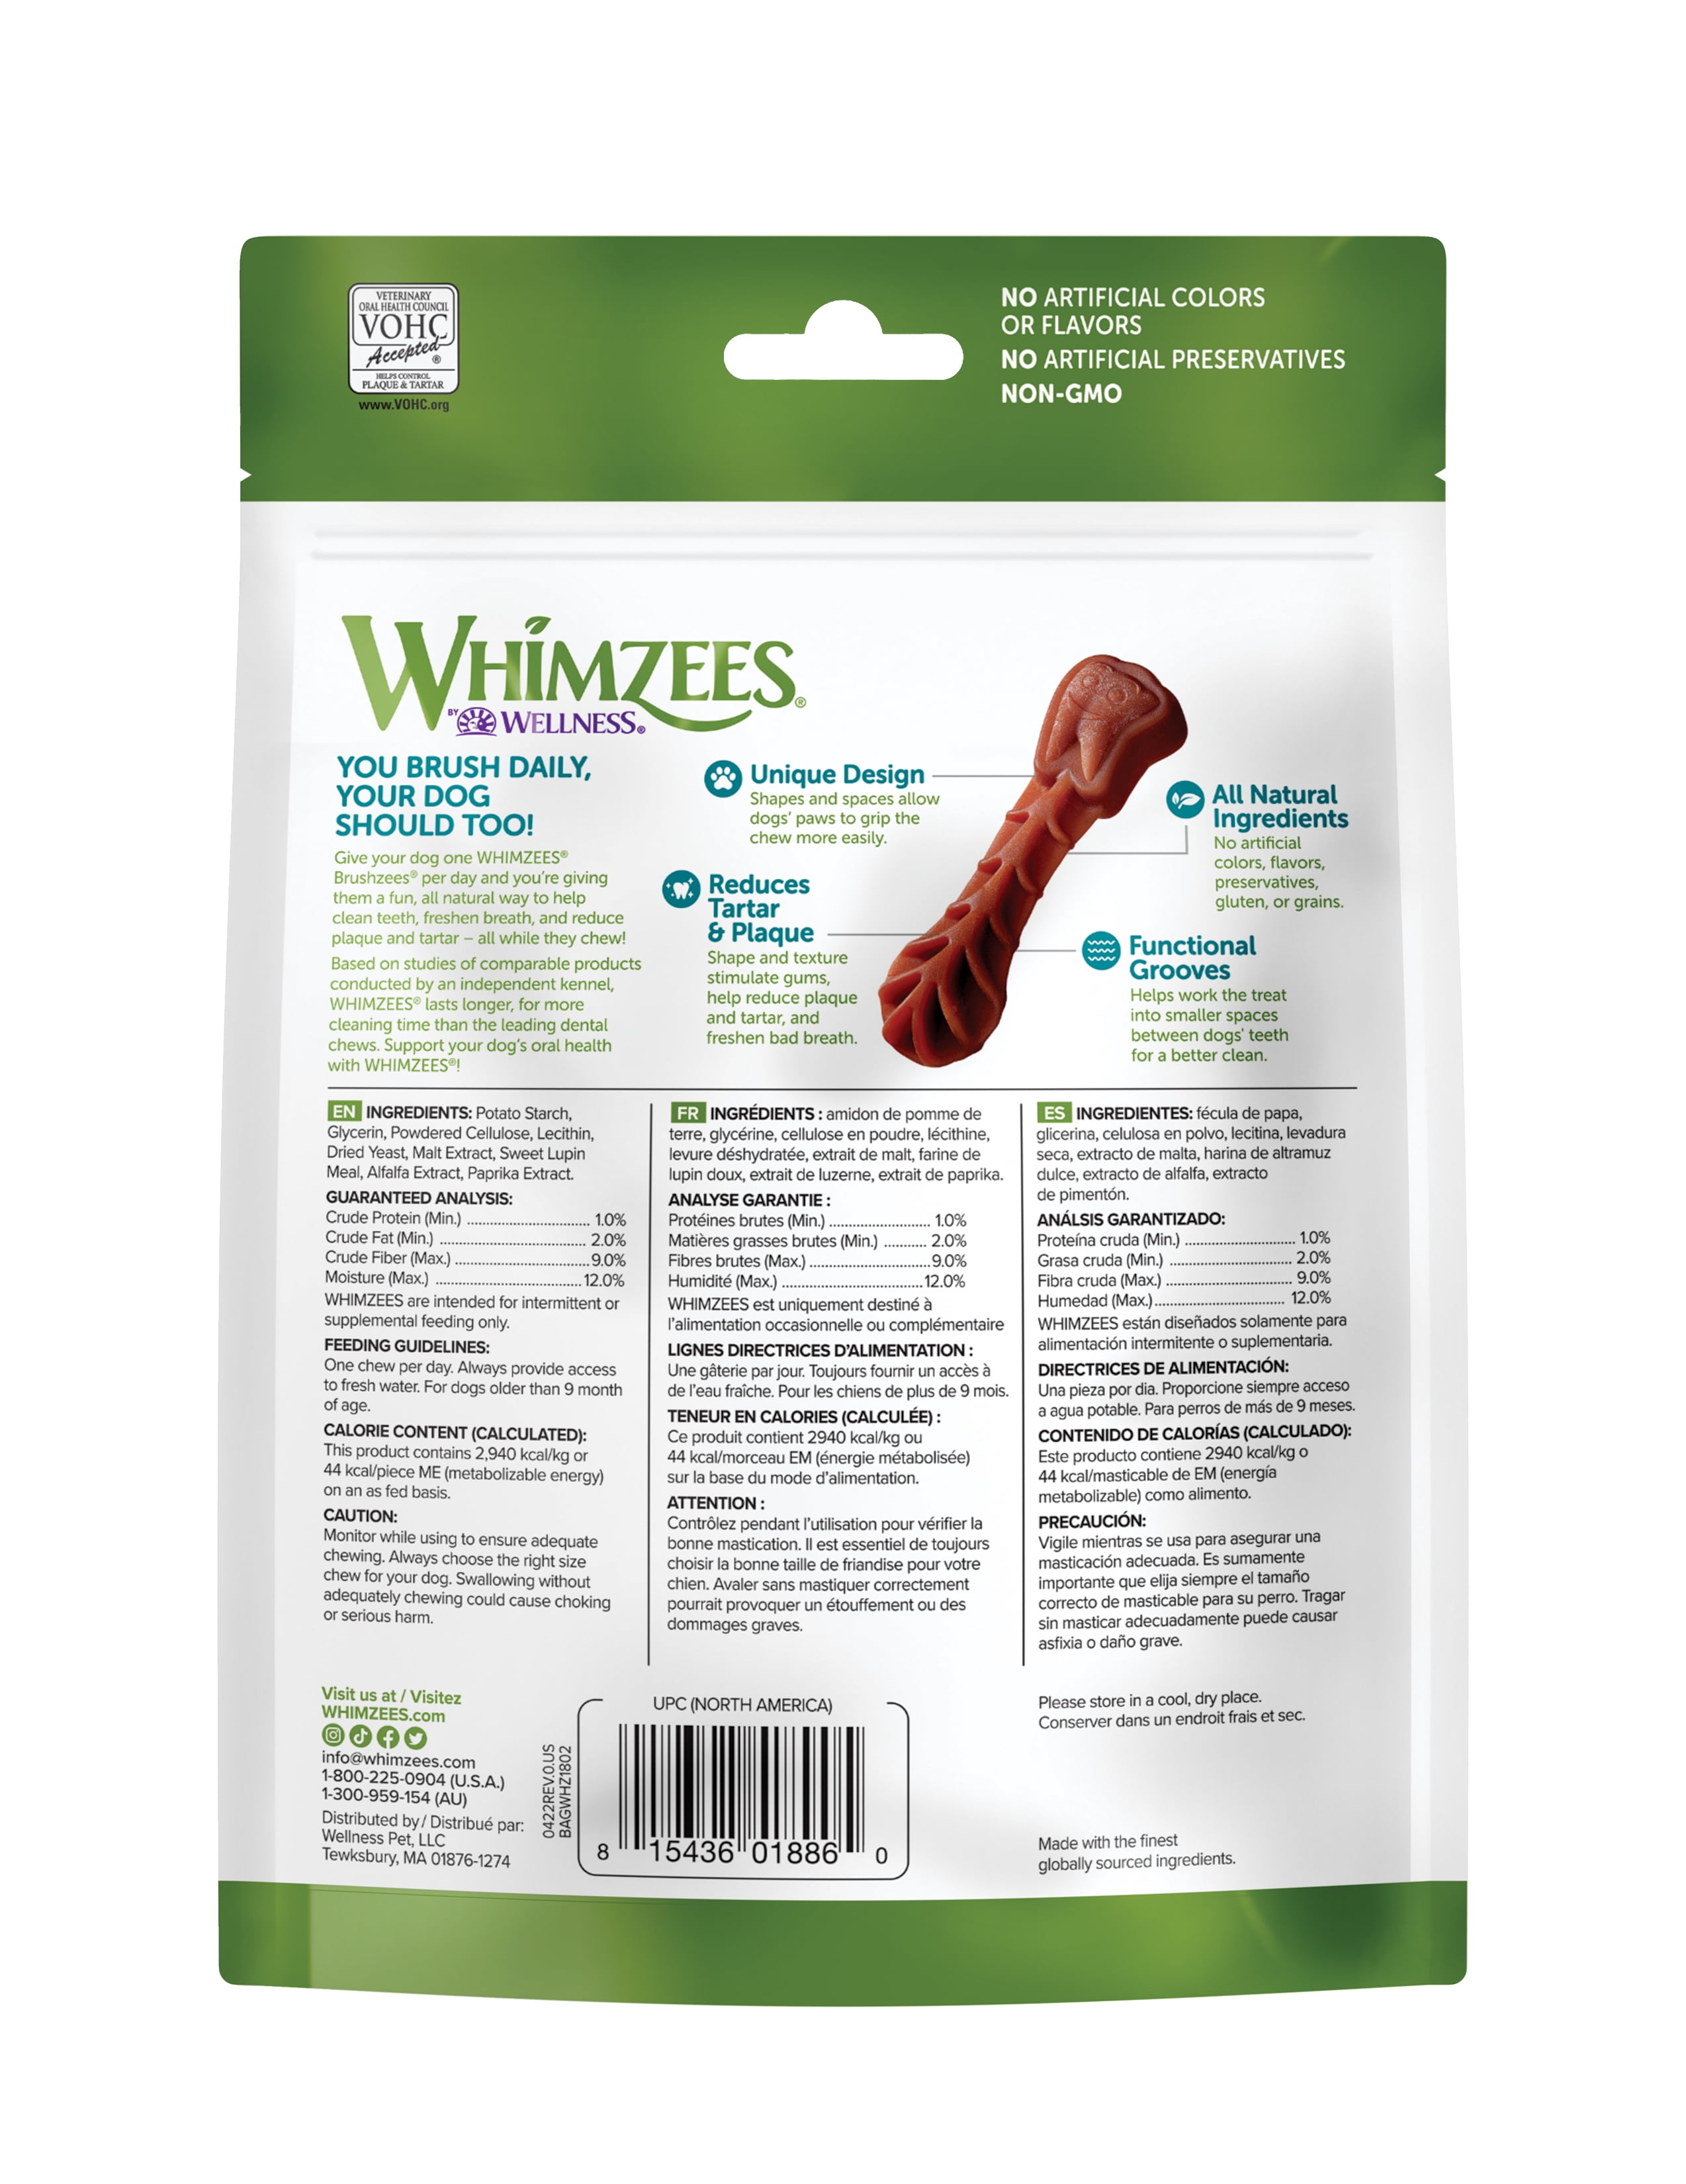 Whimzees Ingredients Best Deal